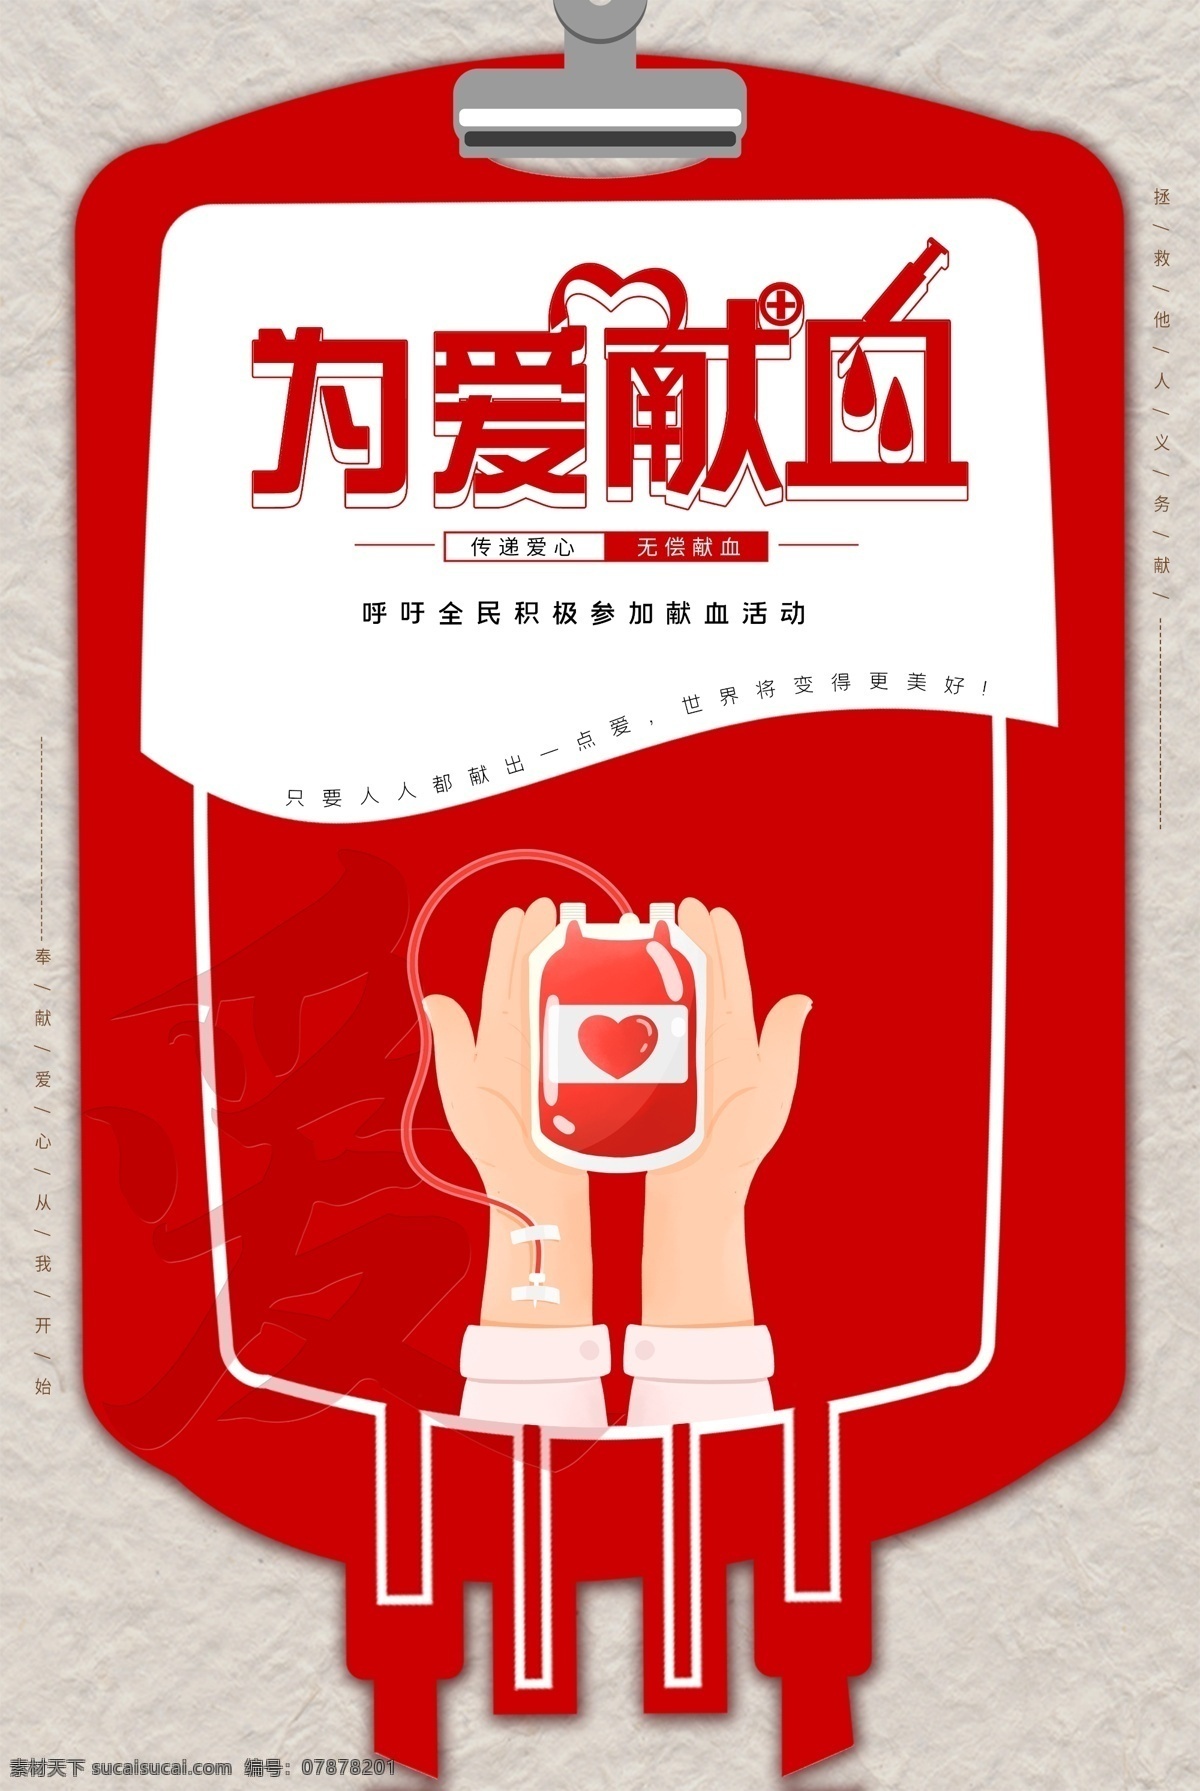 为爱献血 献血 公益 无偿 血液 疫情 防控 宣传 海报 单页 传单 疾控 疾病 控制